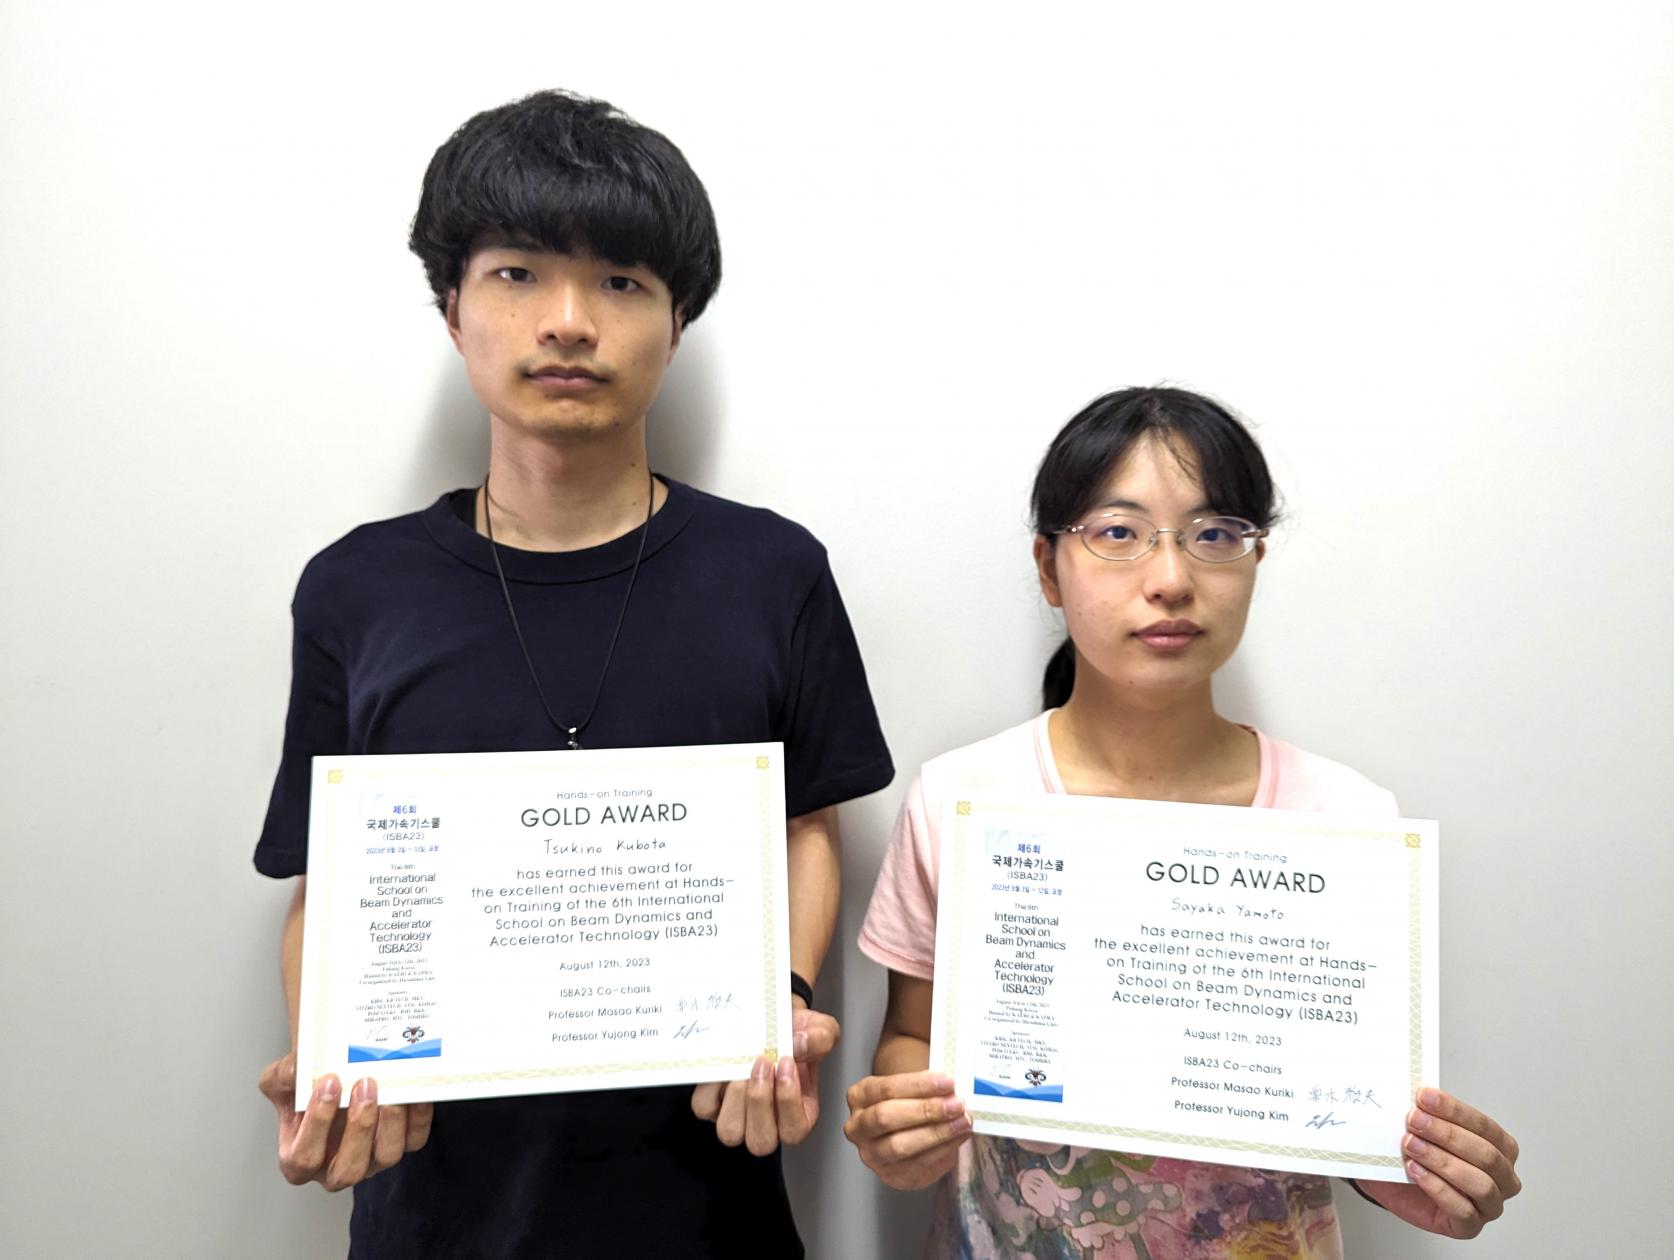 物理学専攻修士1年 久保田月野さんと大和紗也香さんが、国際スクール「The 6th International School on Beam Dynamics and Accelerator Technology (ISBA23)」において「GOLD AWARD」を受賞しました。